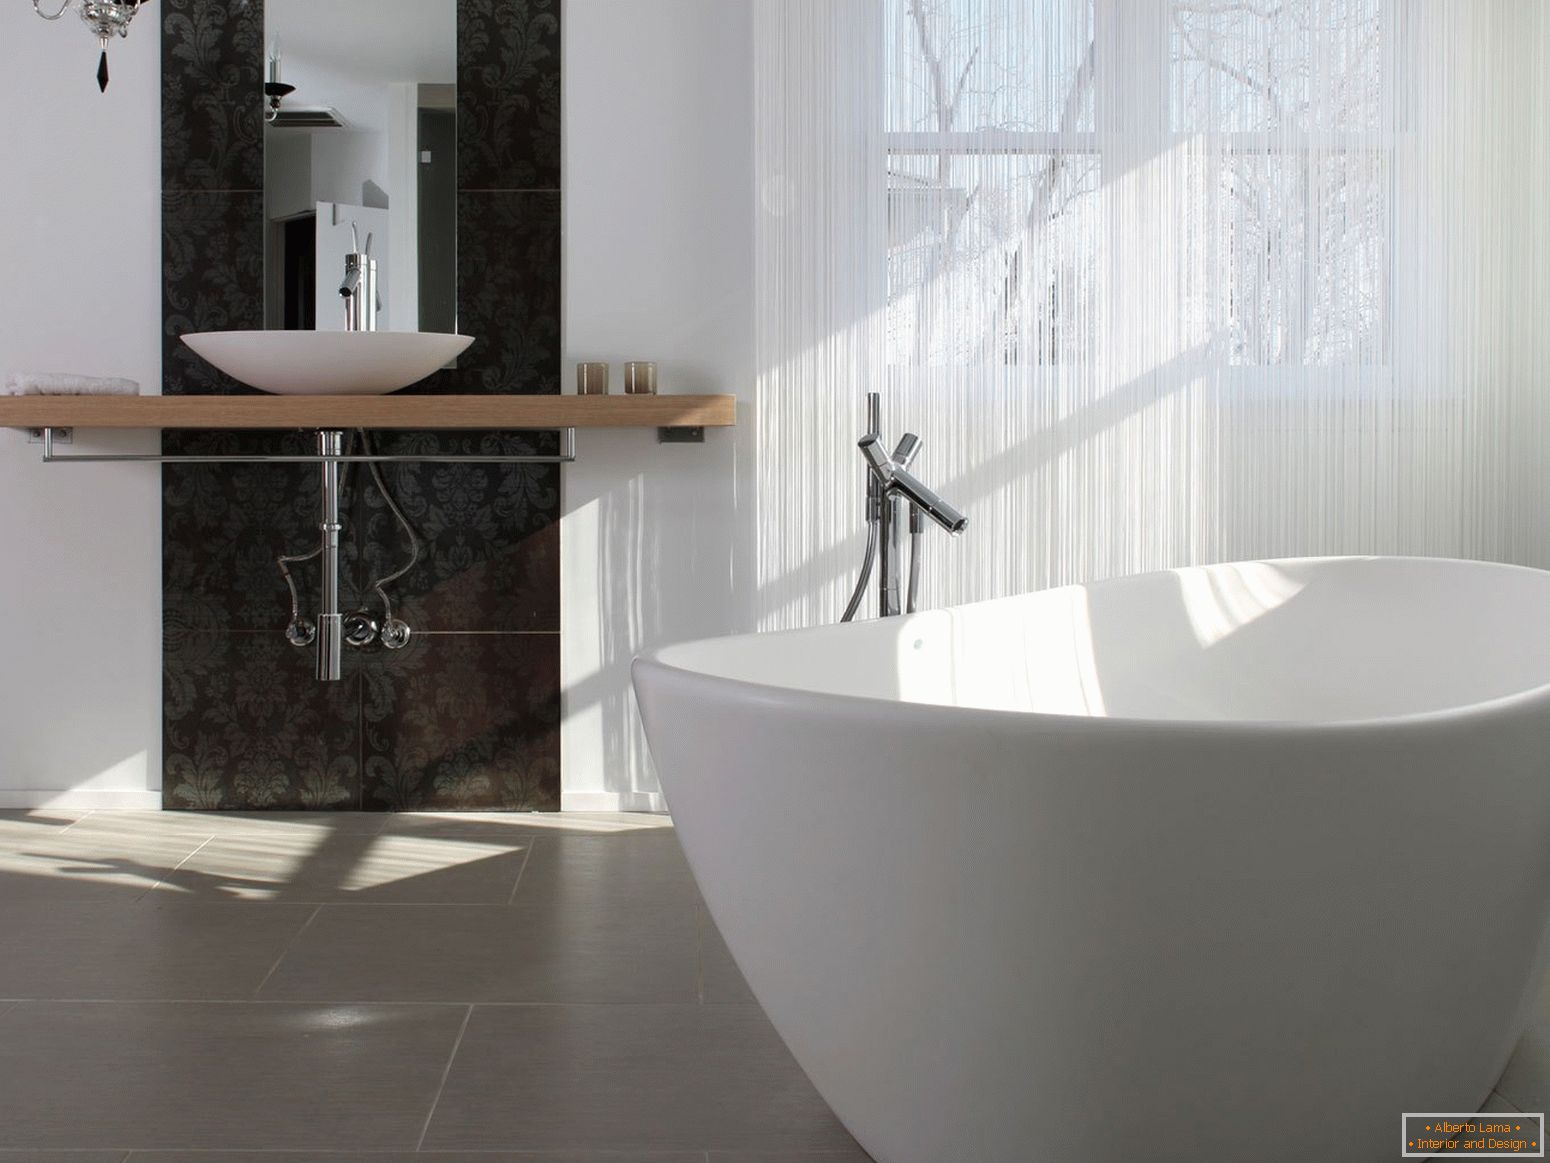 Luxus és egyszerű a fürdőszoba kialakításában